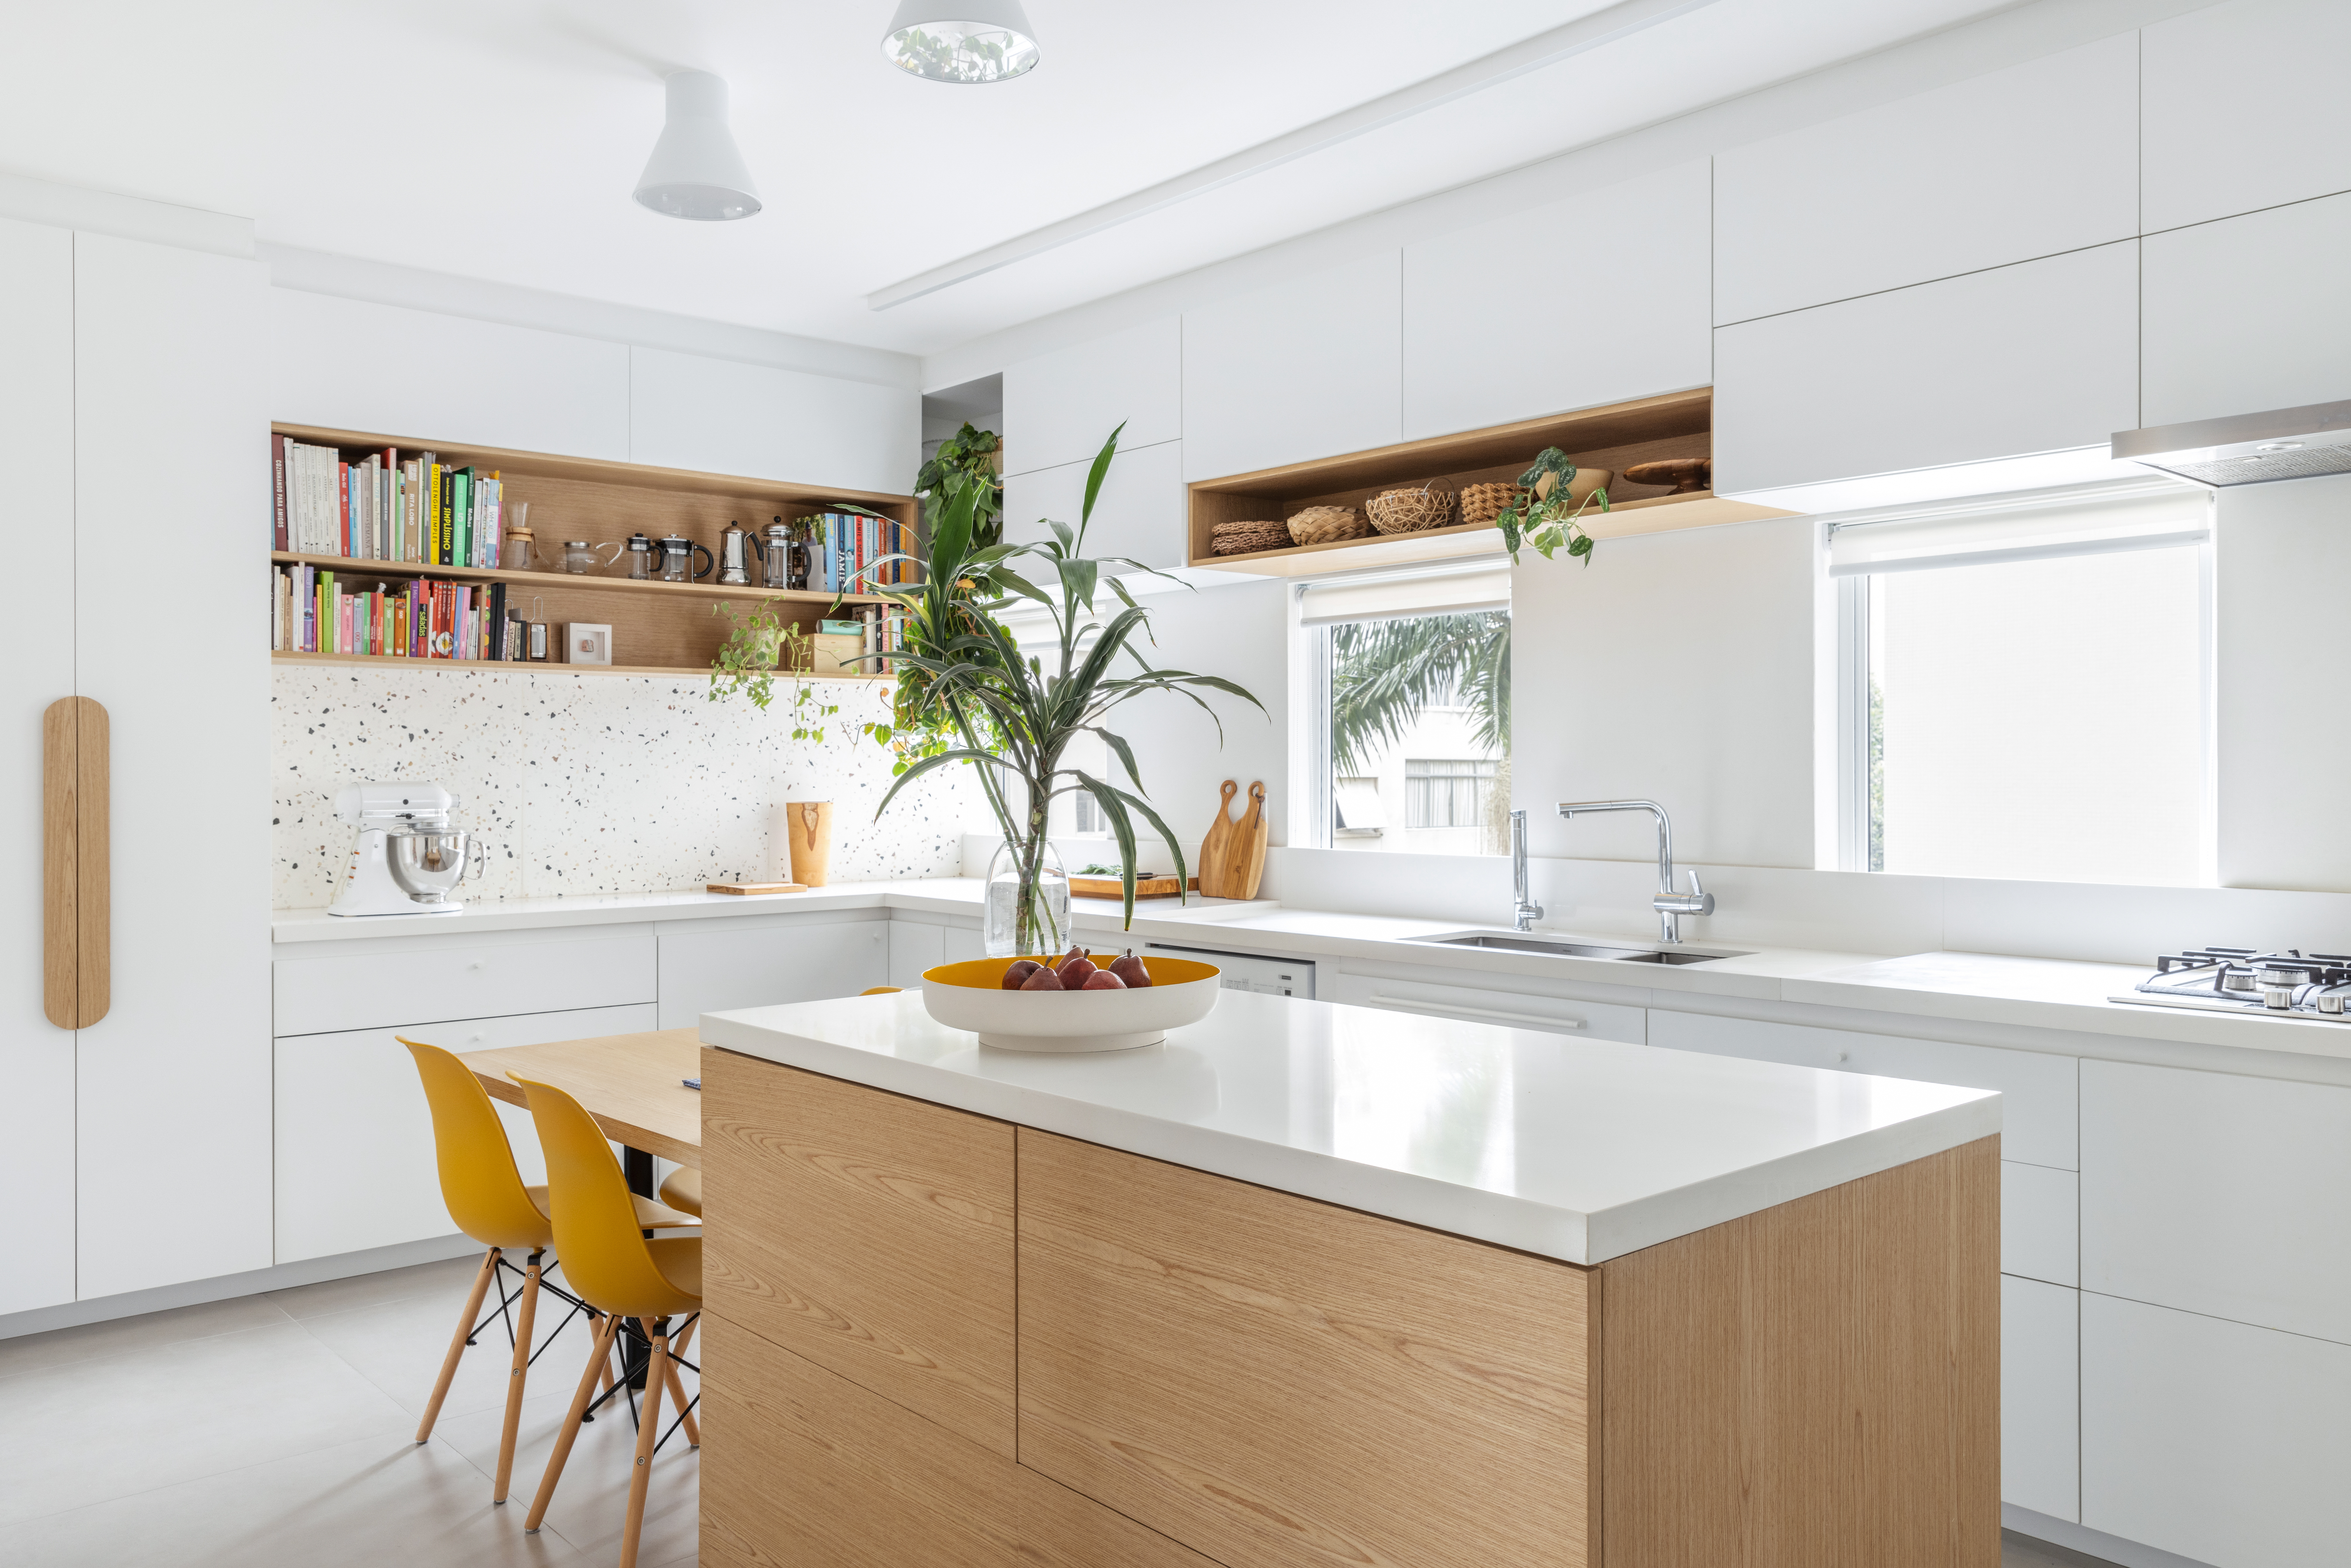 Com paleta branca, apê de 240 m² tem porta de correr inspirada em biombos. Projeto de Lucia Manzano. Na foto, cozinha, bancada branca, marcenaria branca, plantas, cadeiras amarelas.